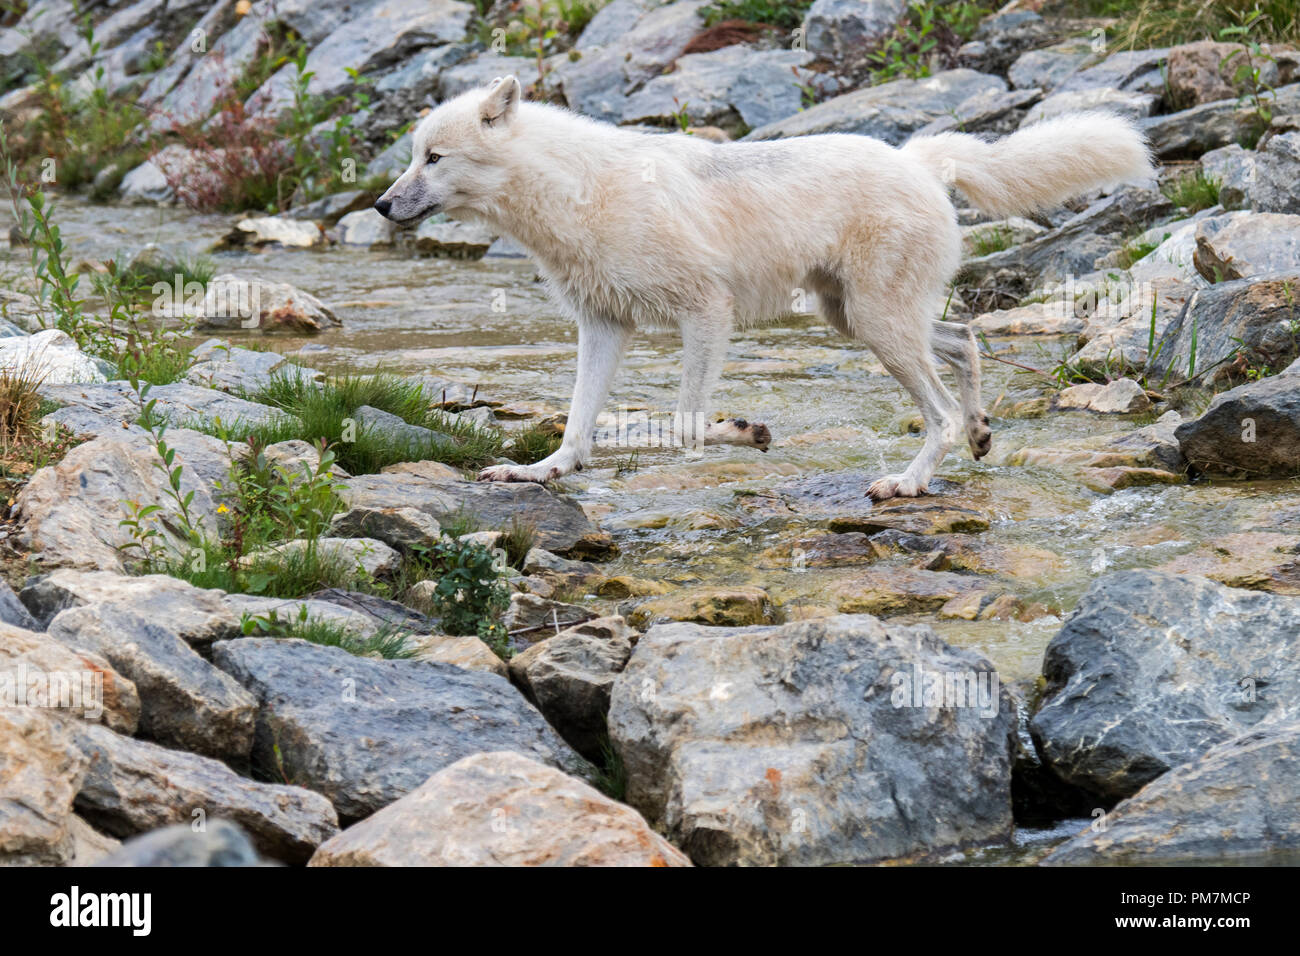 Seul Canadien loup arctique / White wolf / Polar wolf (Canis lupus arctos) indigènes au Canada de l'eau passage de stream Banque D'Images